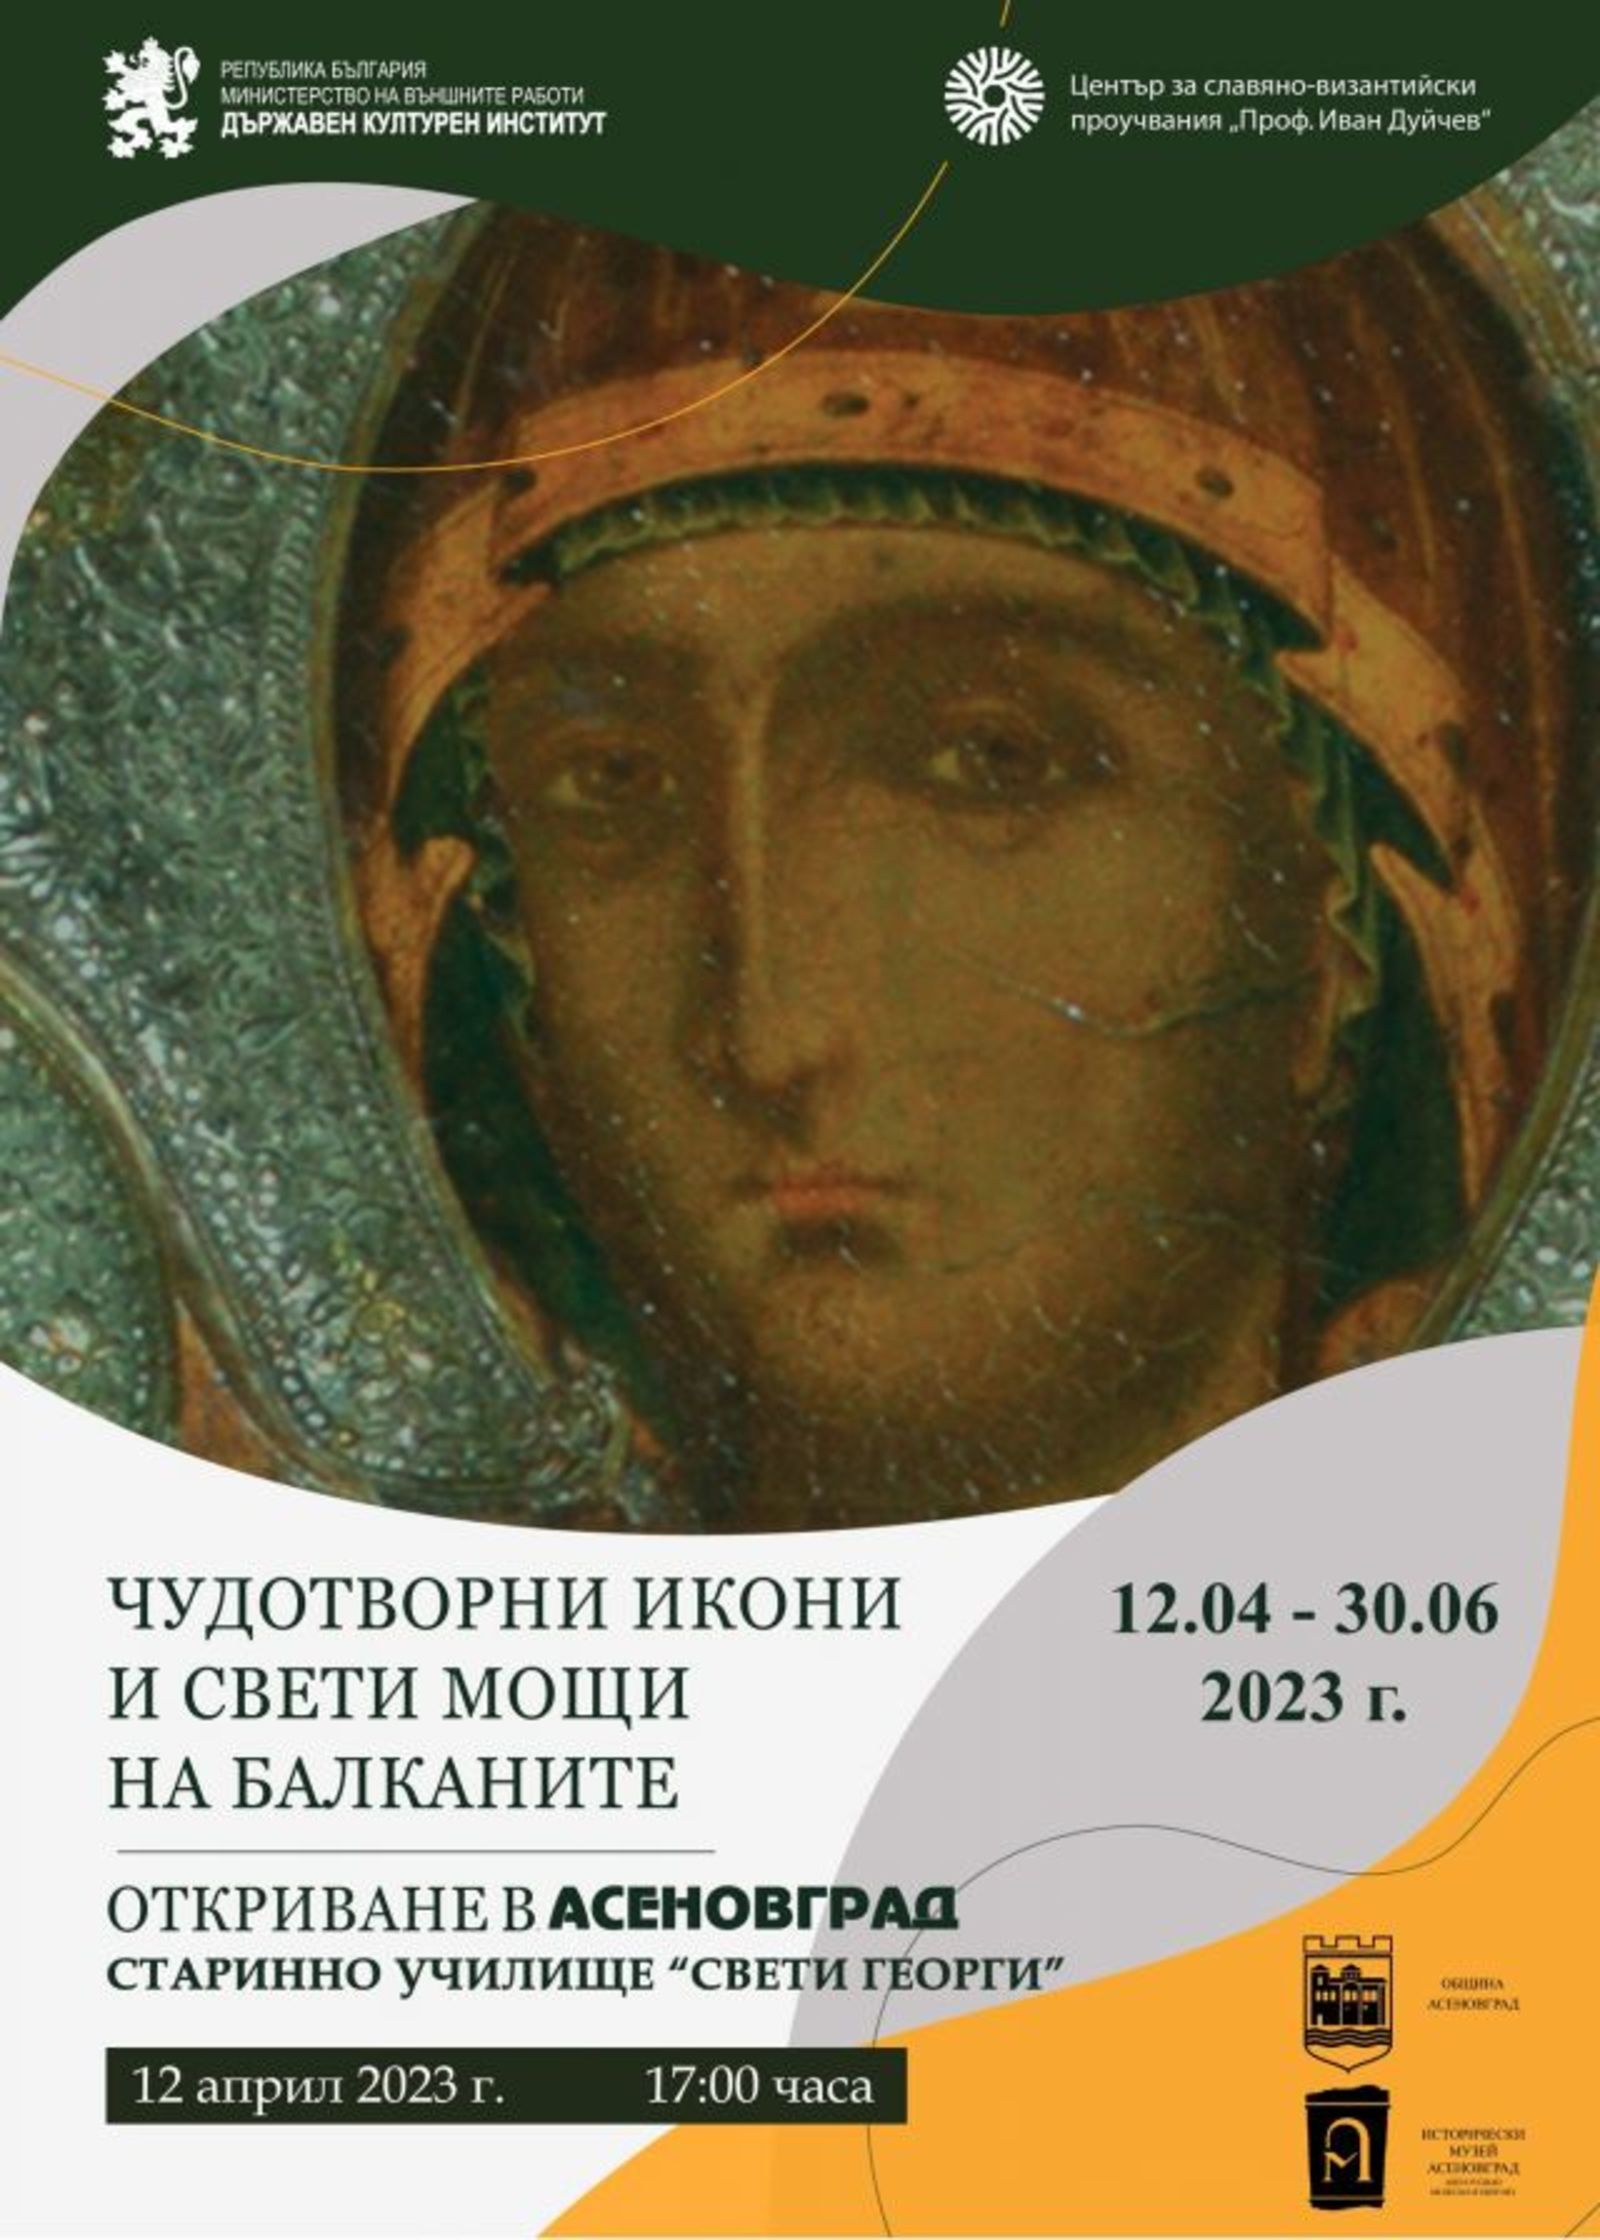 Изложбата "Чудотворни икони и свети мощи на Балканите" ще бъде открита в Асеновград